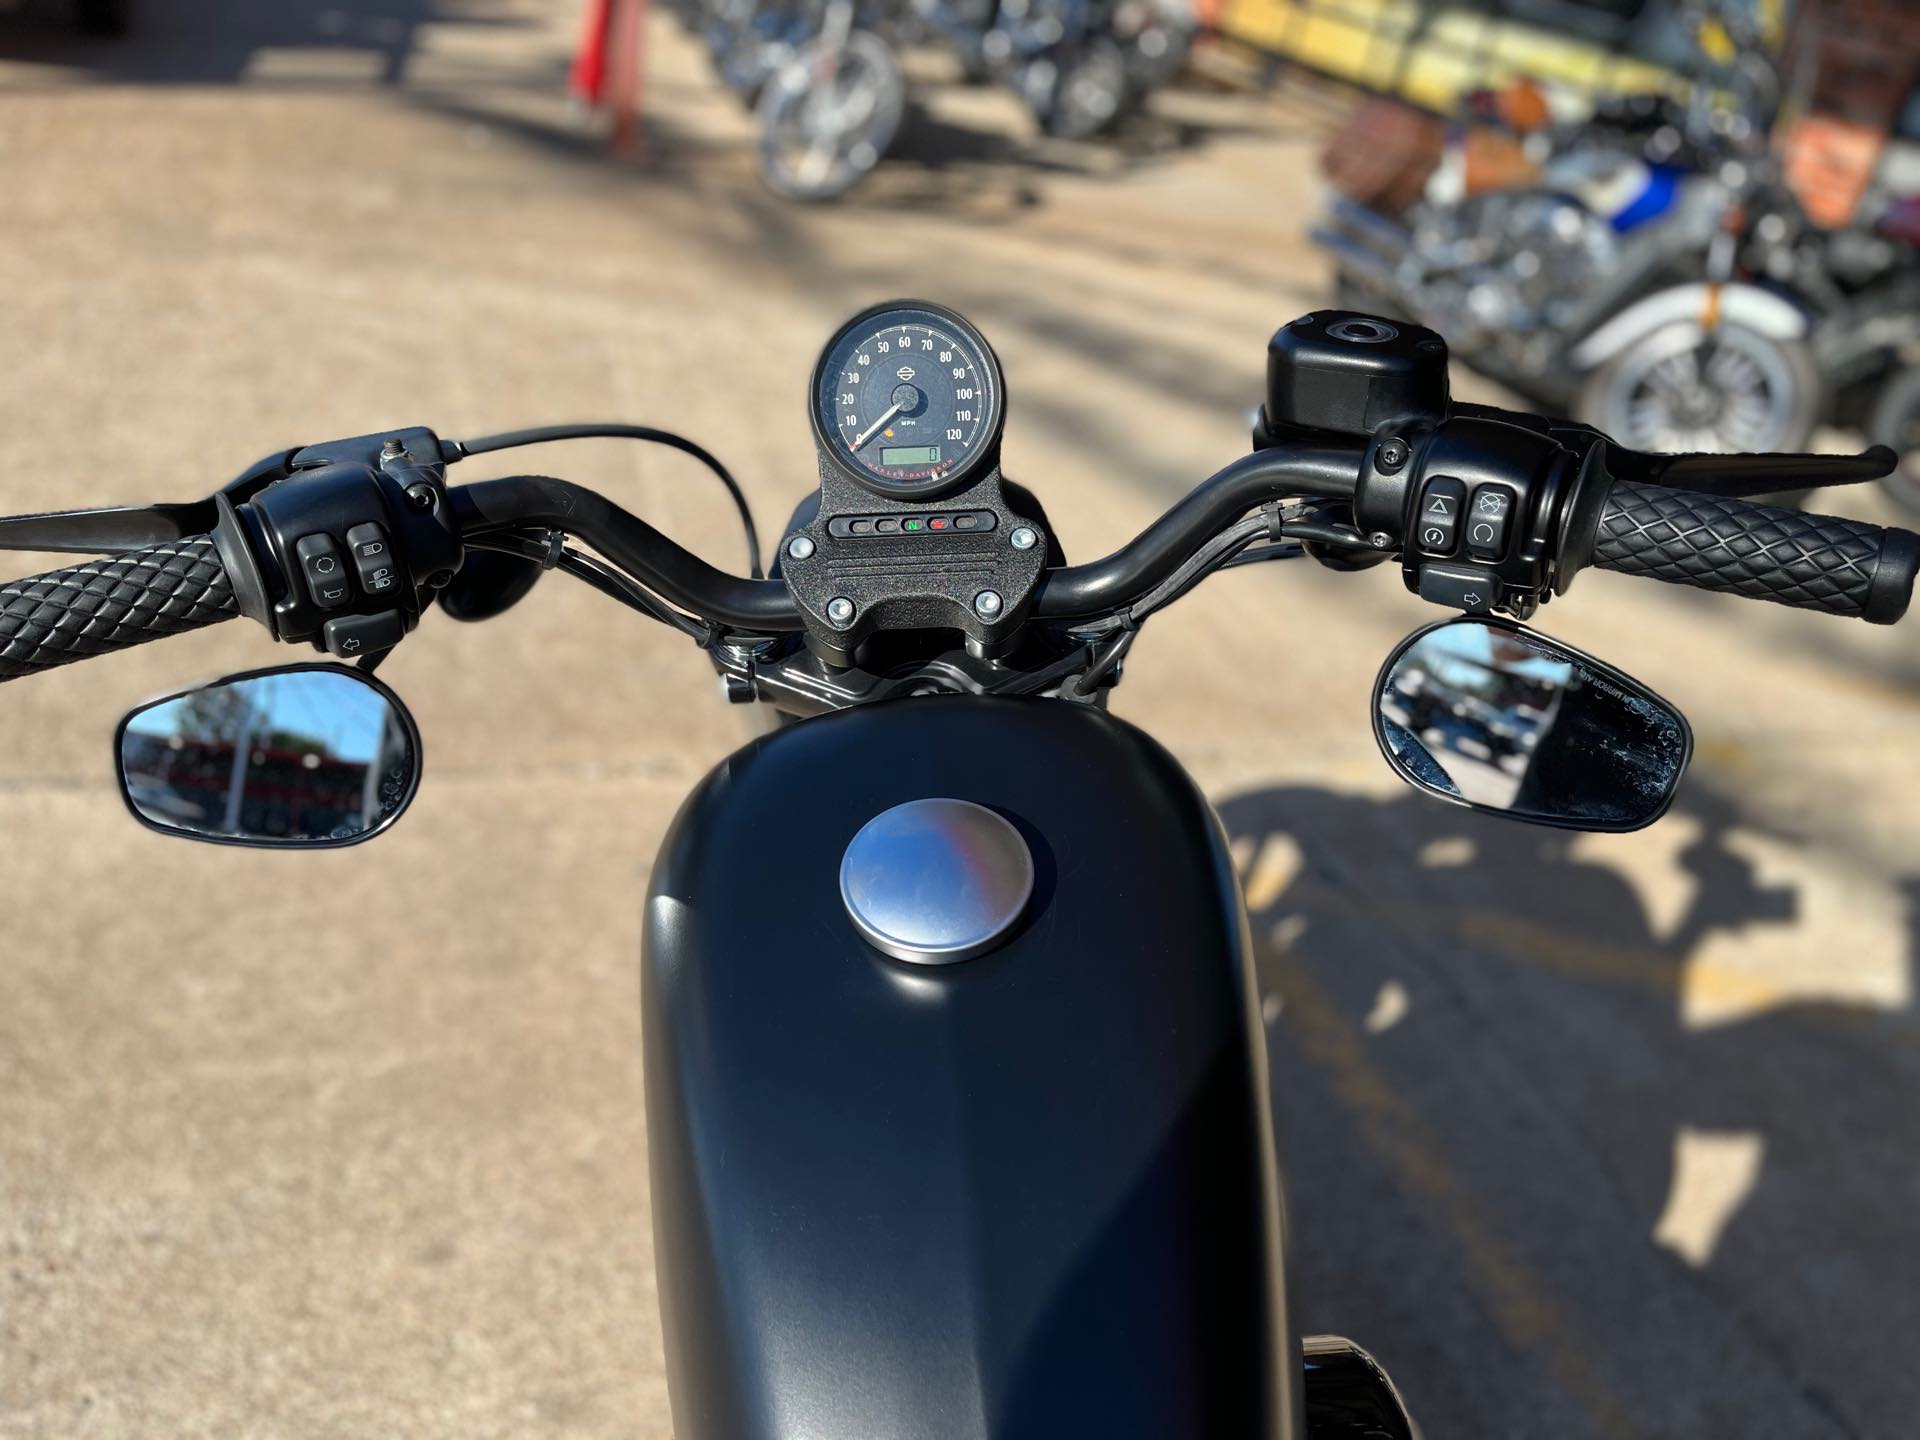 2019 Harley-Davidson Sportster Iron 883 at Wild West Motoplex